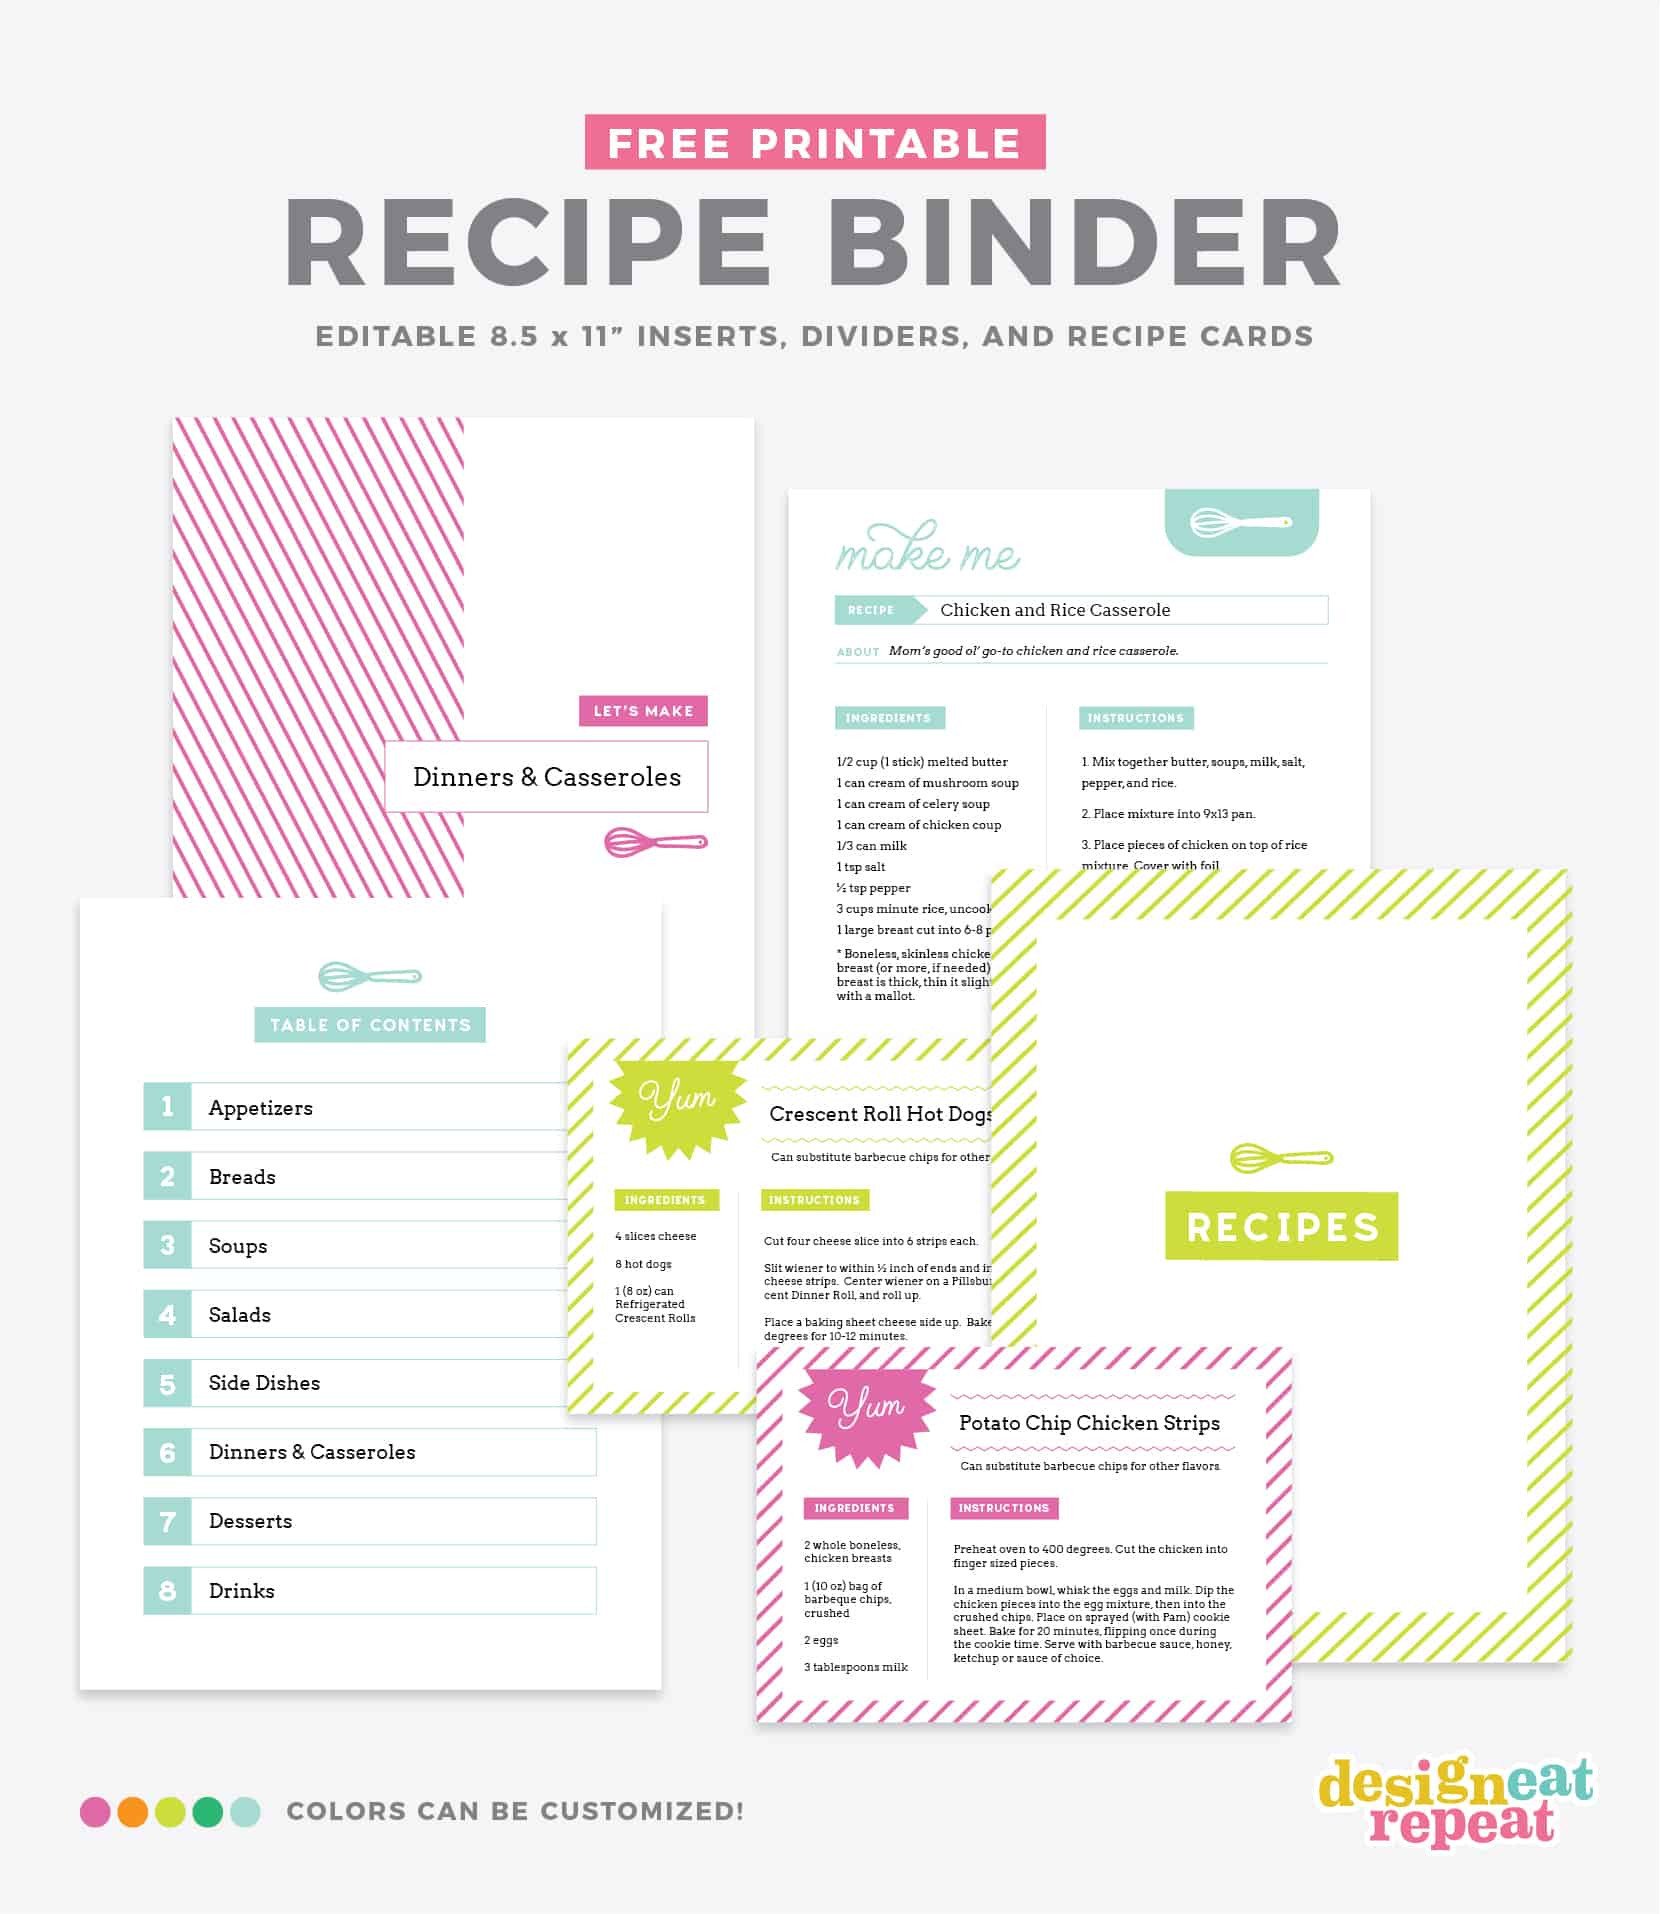 DIY Recipe Book with Free Printable Recipe Binder Kit